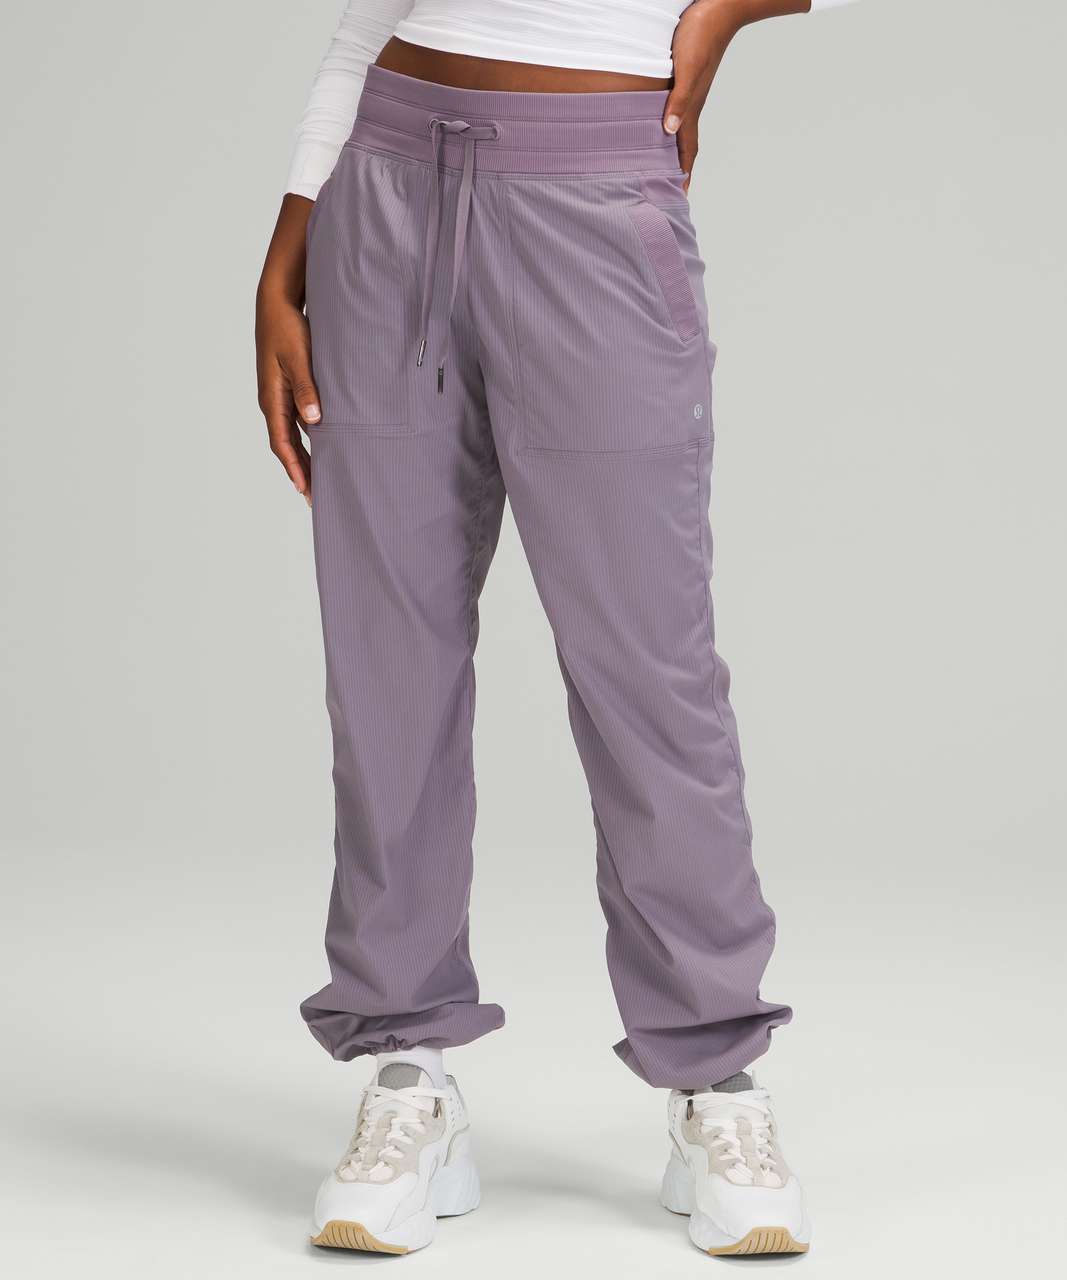 lululemon athletica Dance Studio Mid-rise Pants Regular - Color  Purple/pastel - Size 0